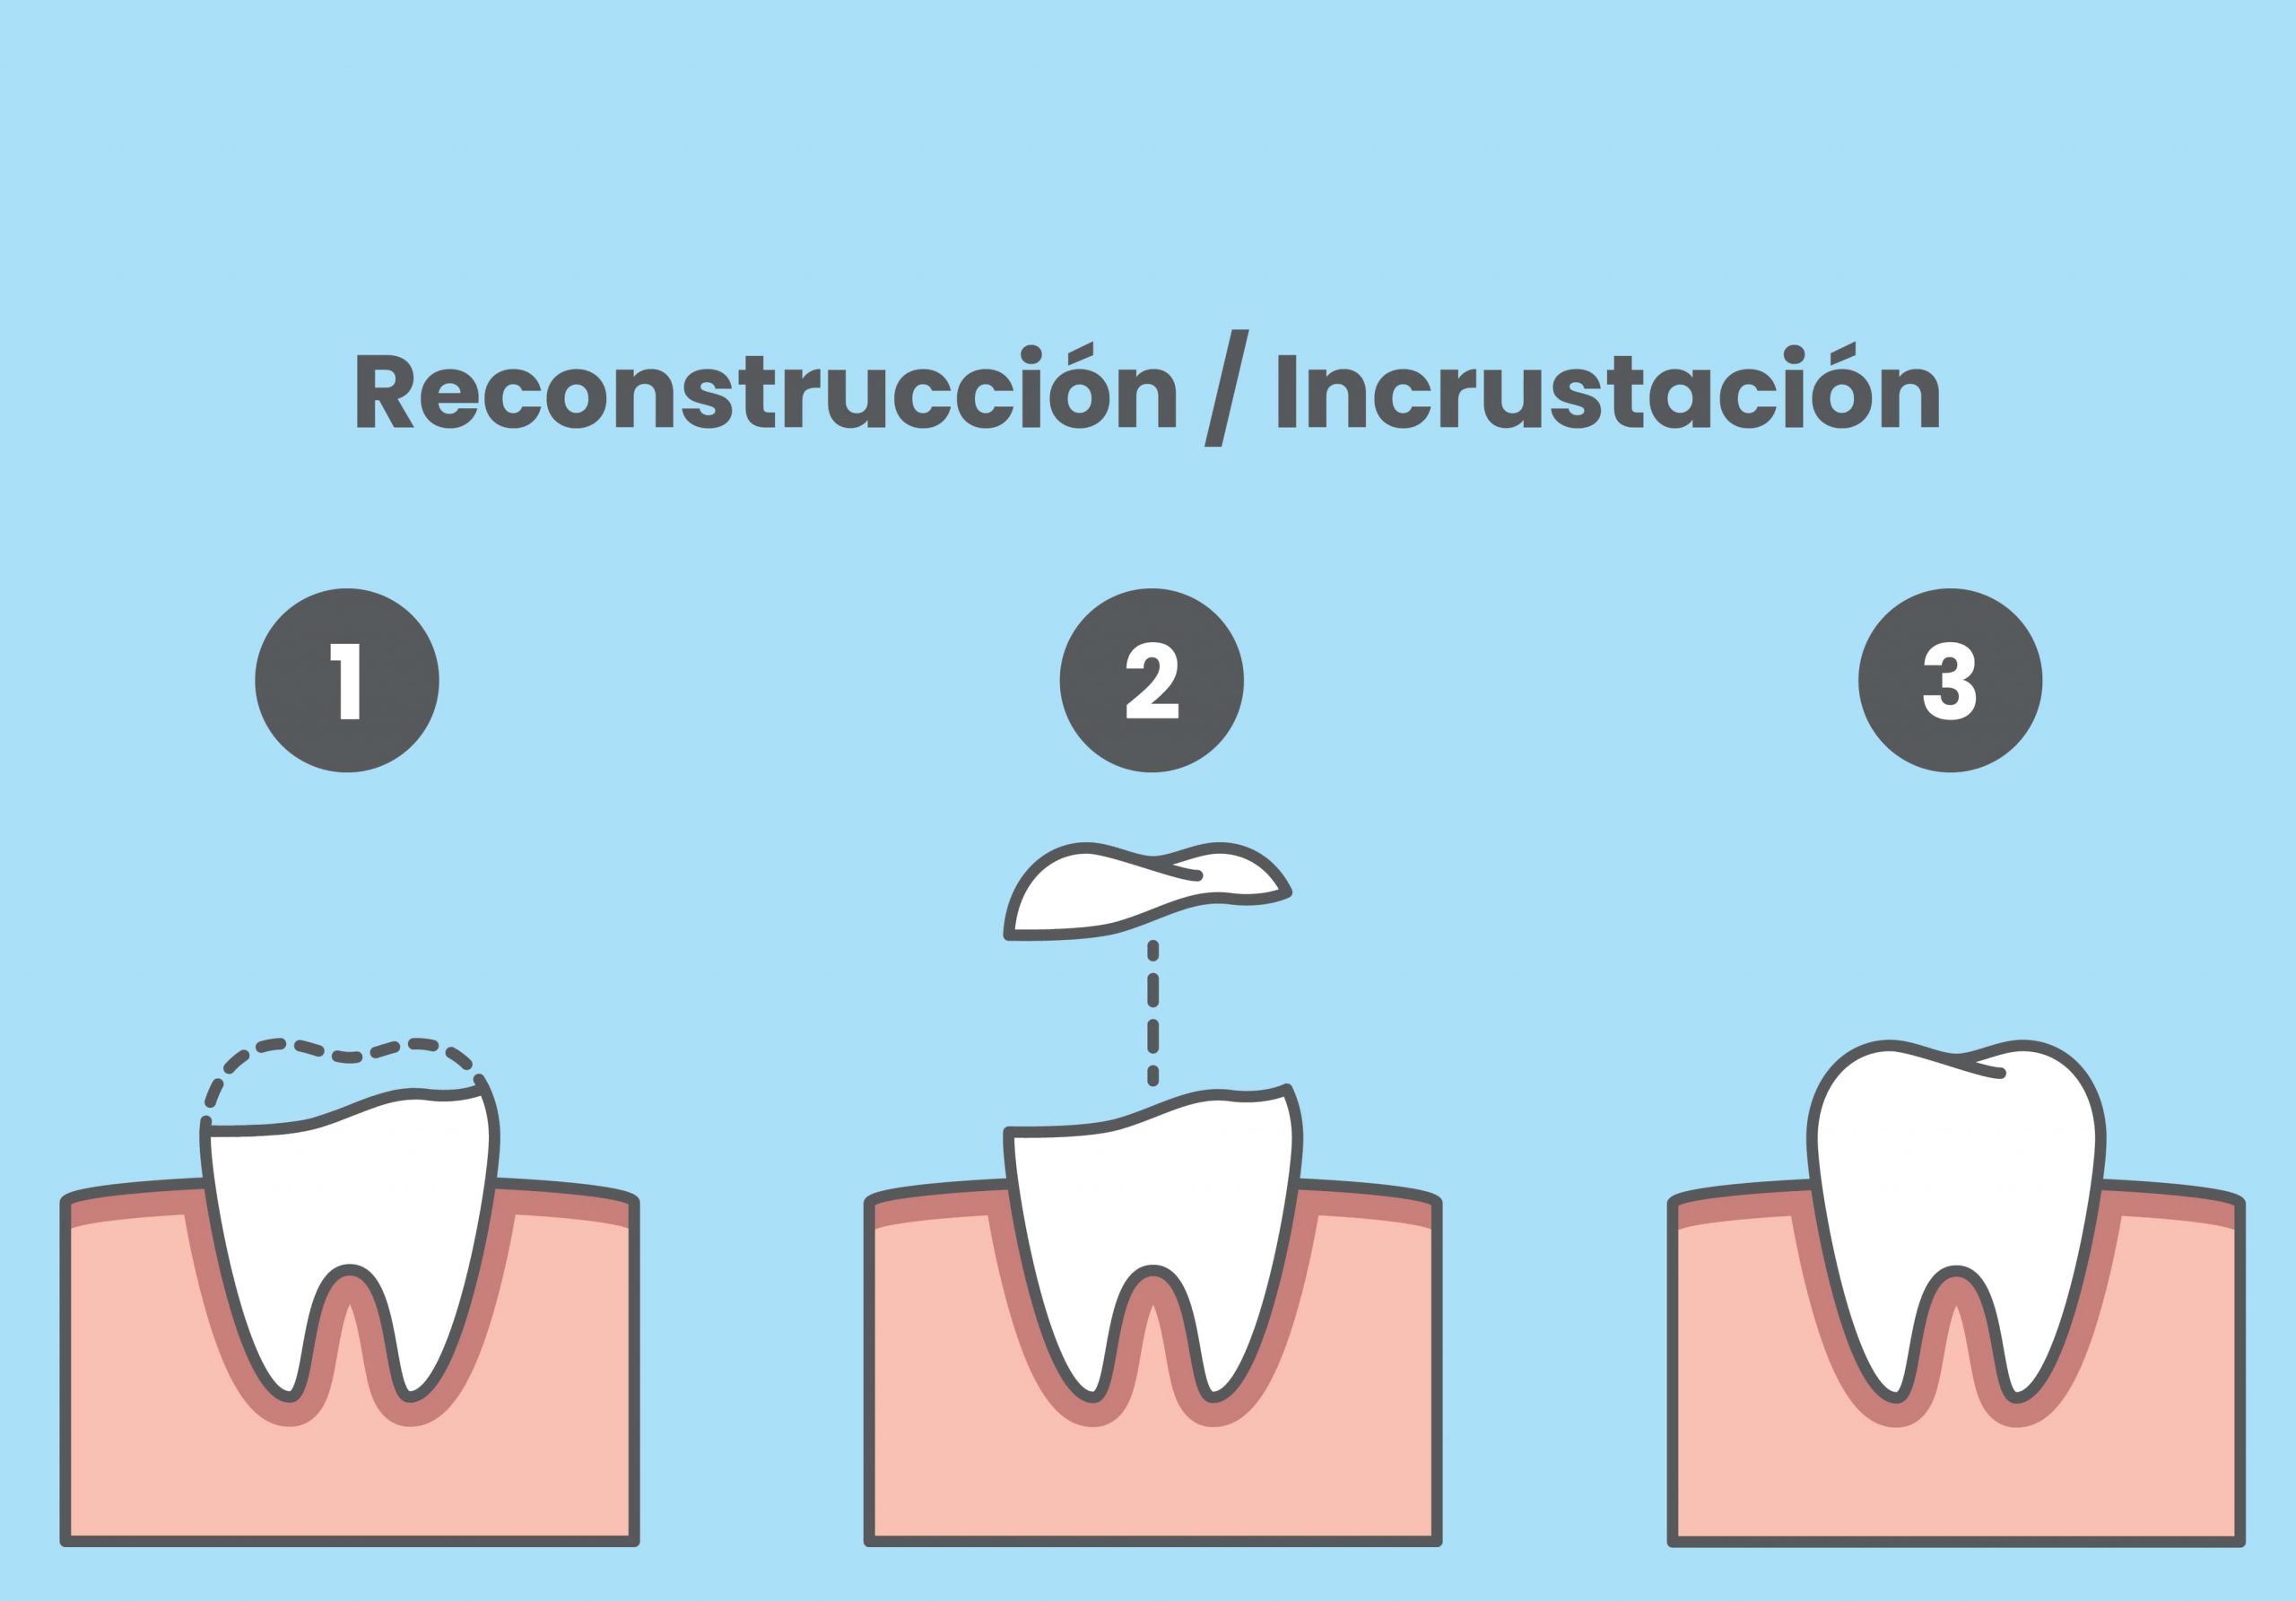 Grafico explicativo sobre reconstrucción e incrustación dental.